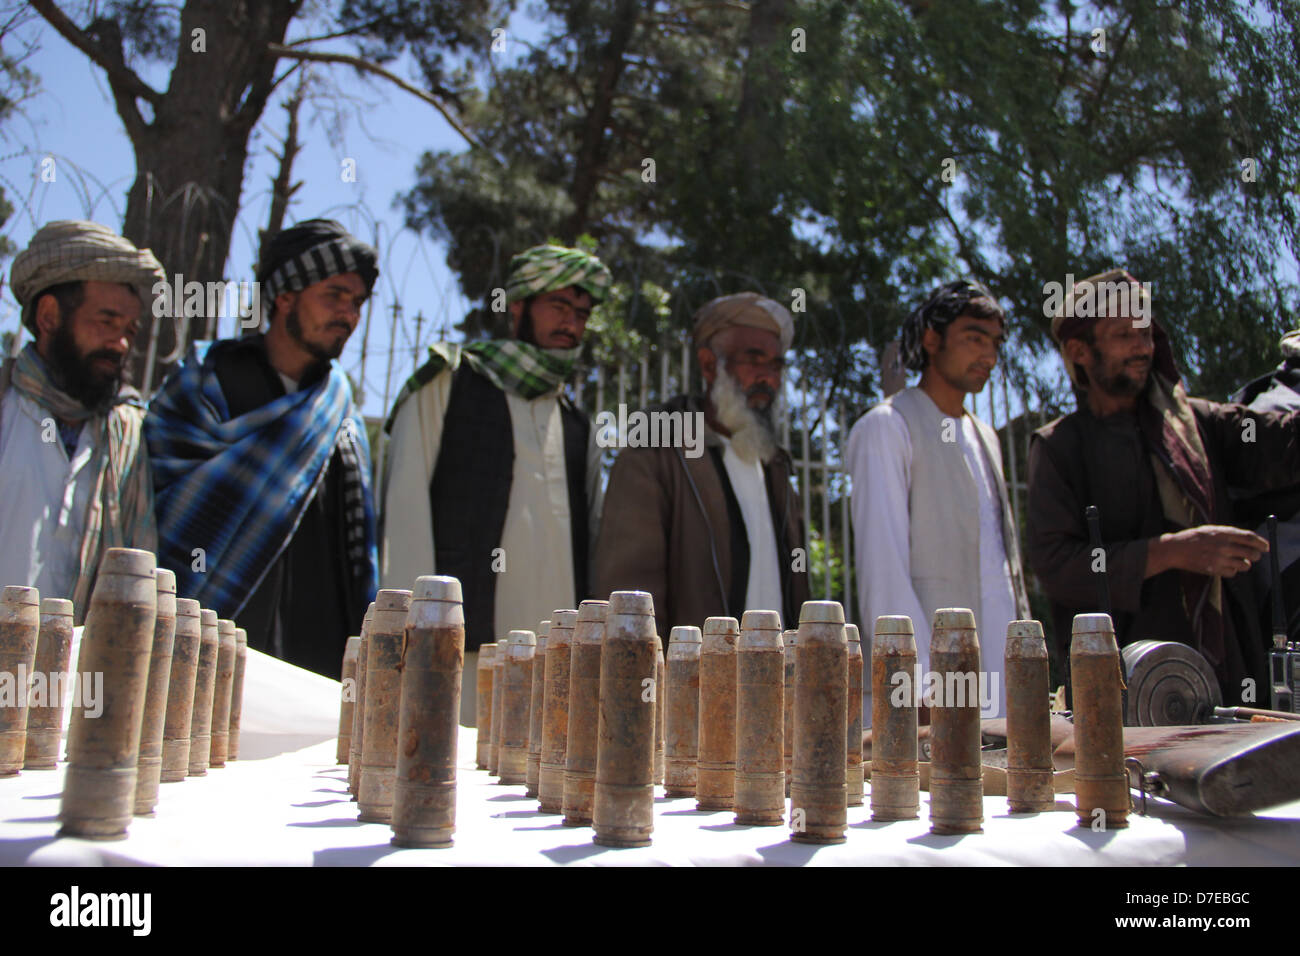 Les militants talibans inscrivez-vous processus de paix au Cœur province Banque D'Images